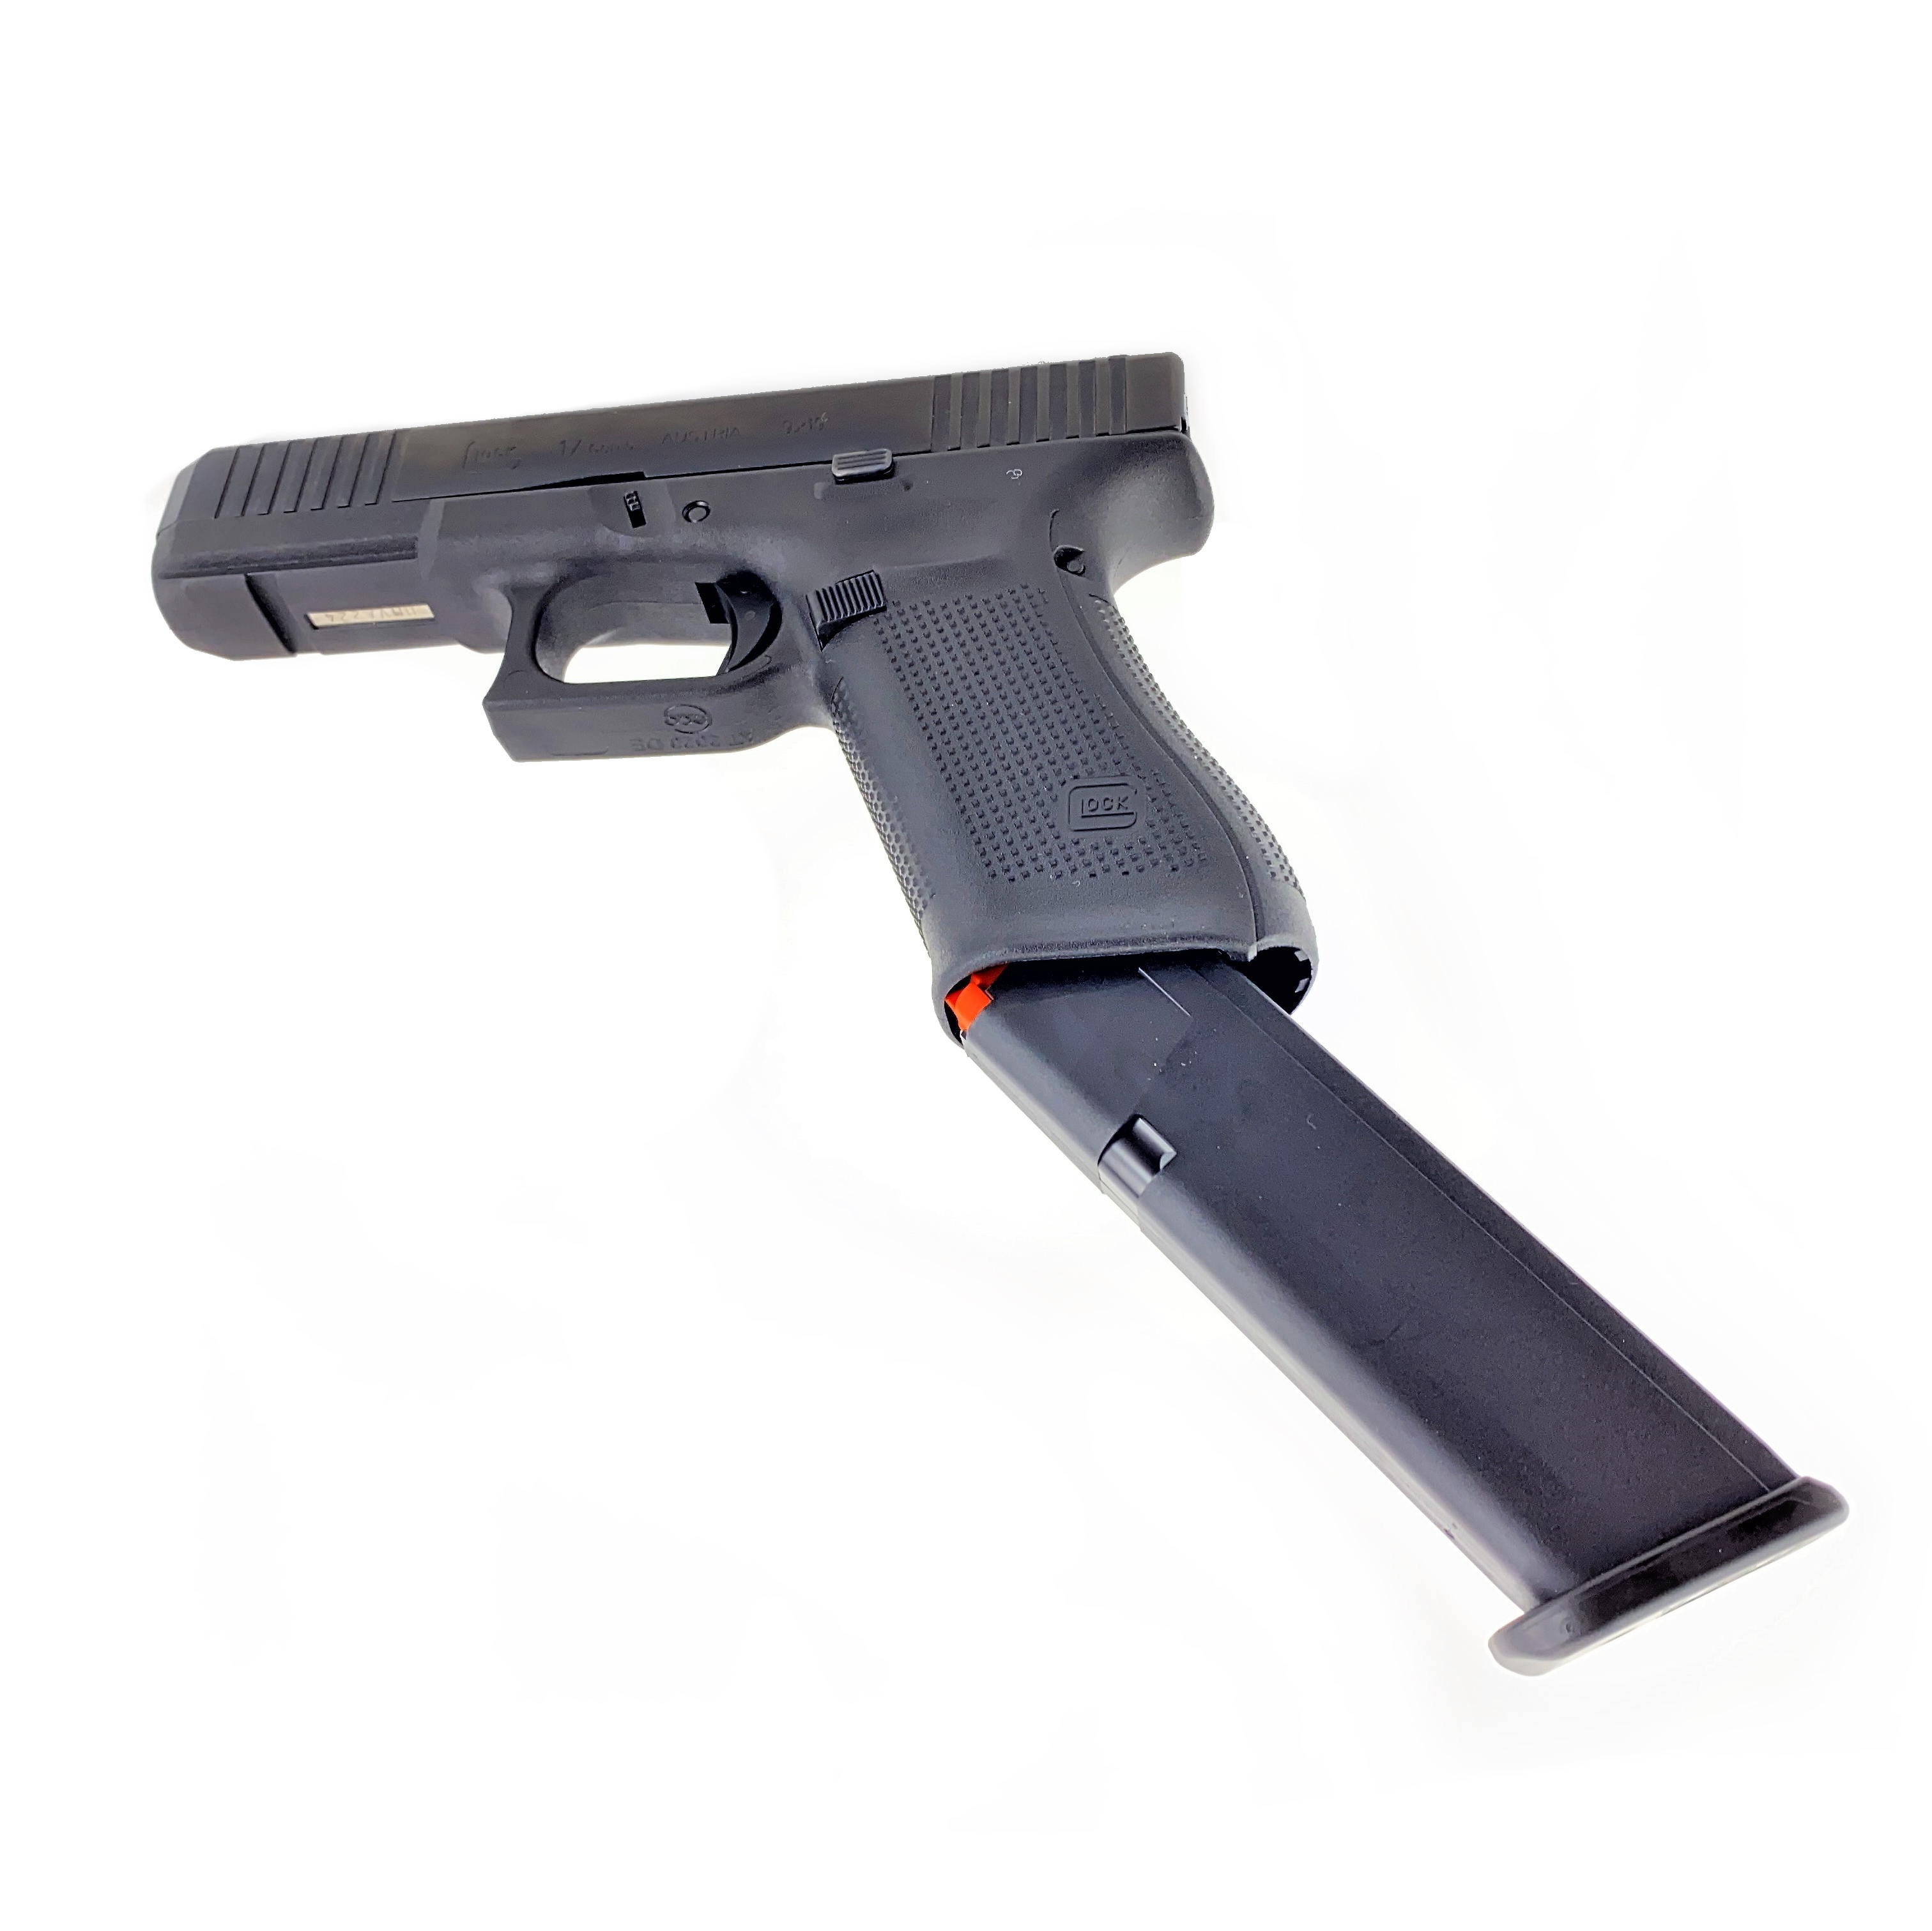 Glock 17 gen5 leichtes Nachladen durch Magazintrichter | F.A.S.T. Onlineshop